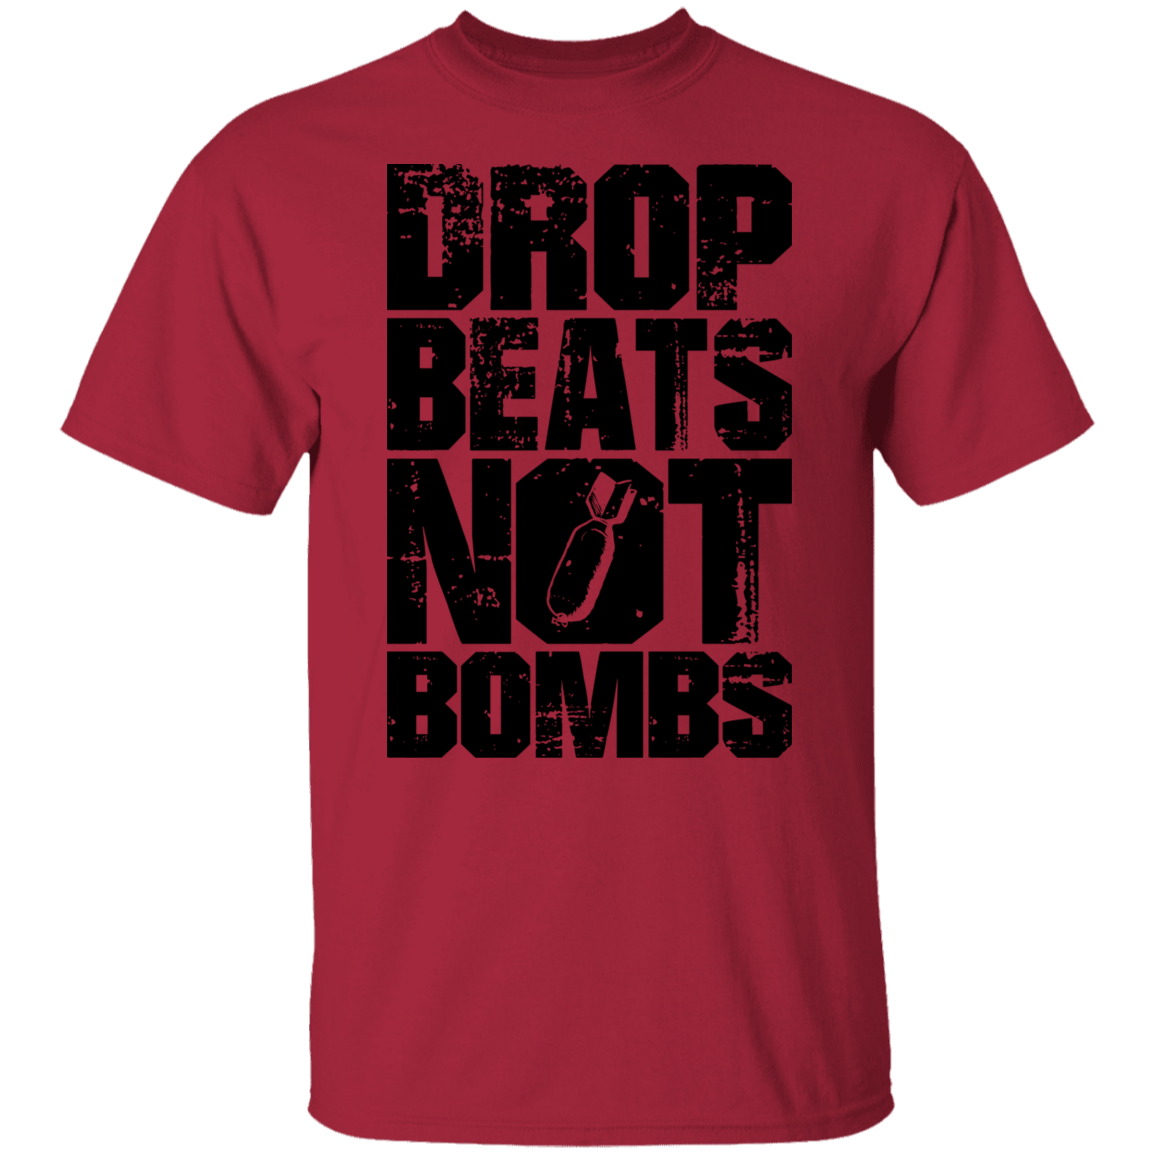 DROP BEATS NOT BOMBS TEE